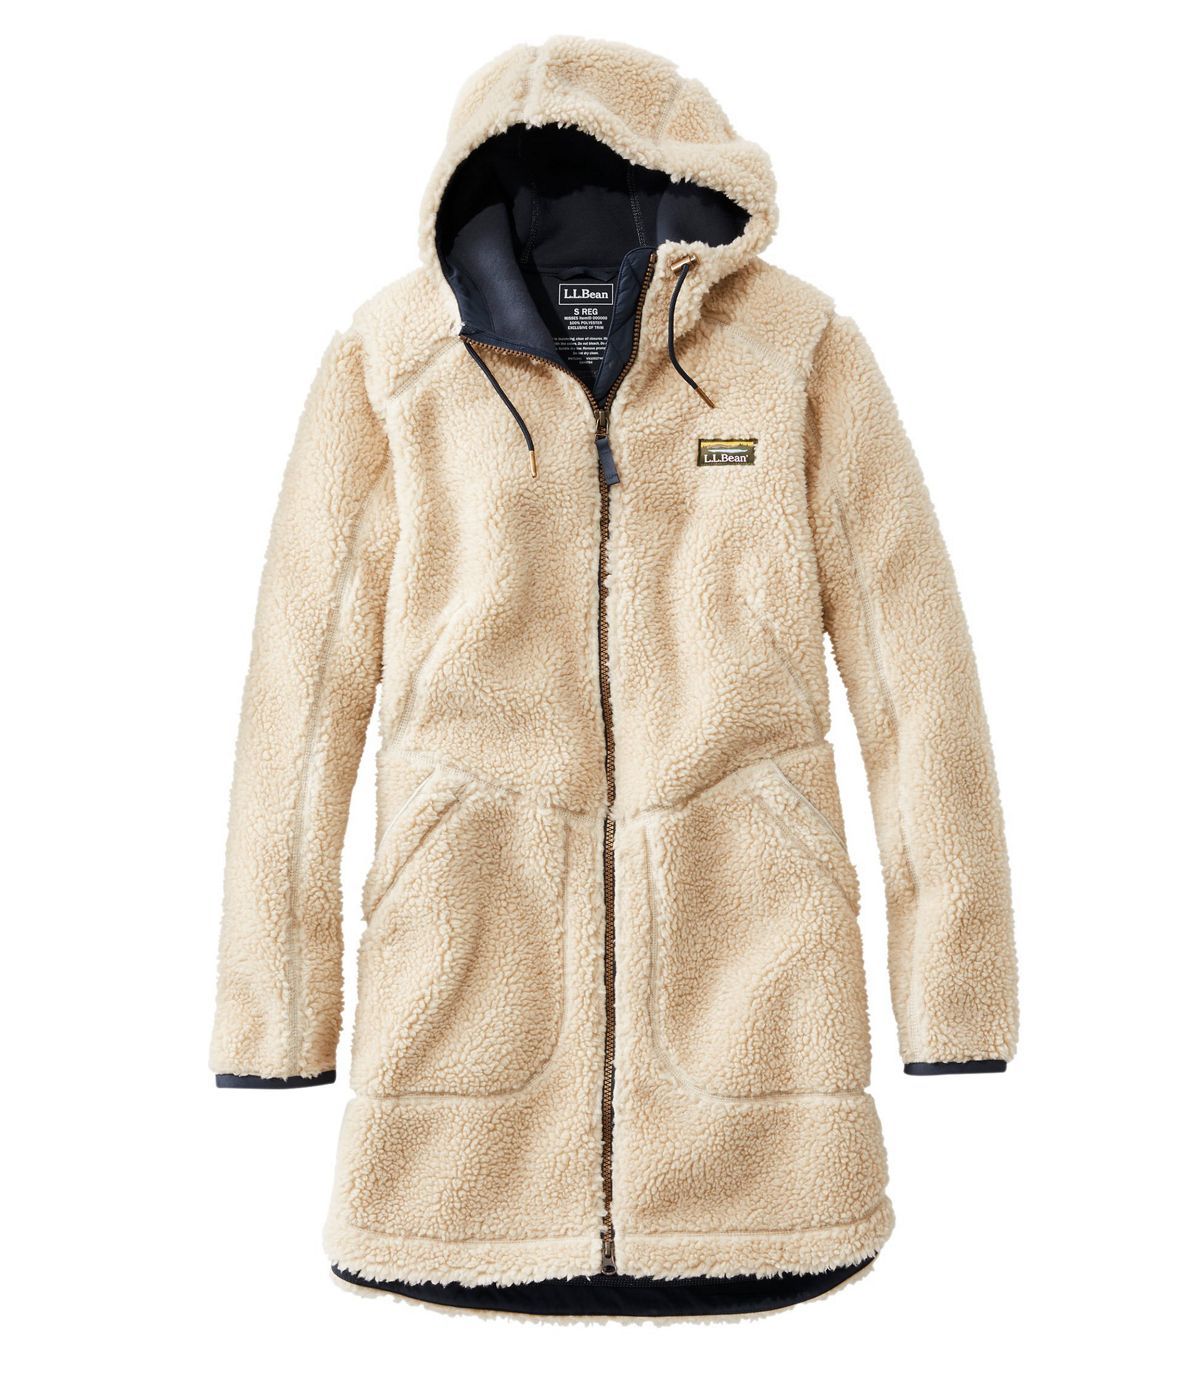 Lavany Womens Long Coat Faux Fur Warm Winter Jacket Casual Outwear